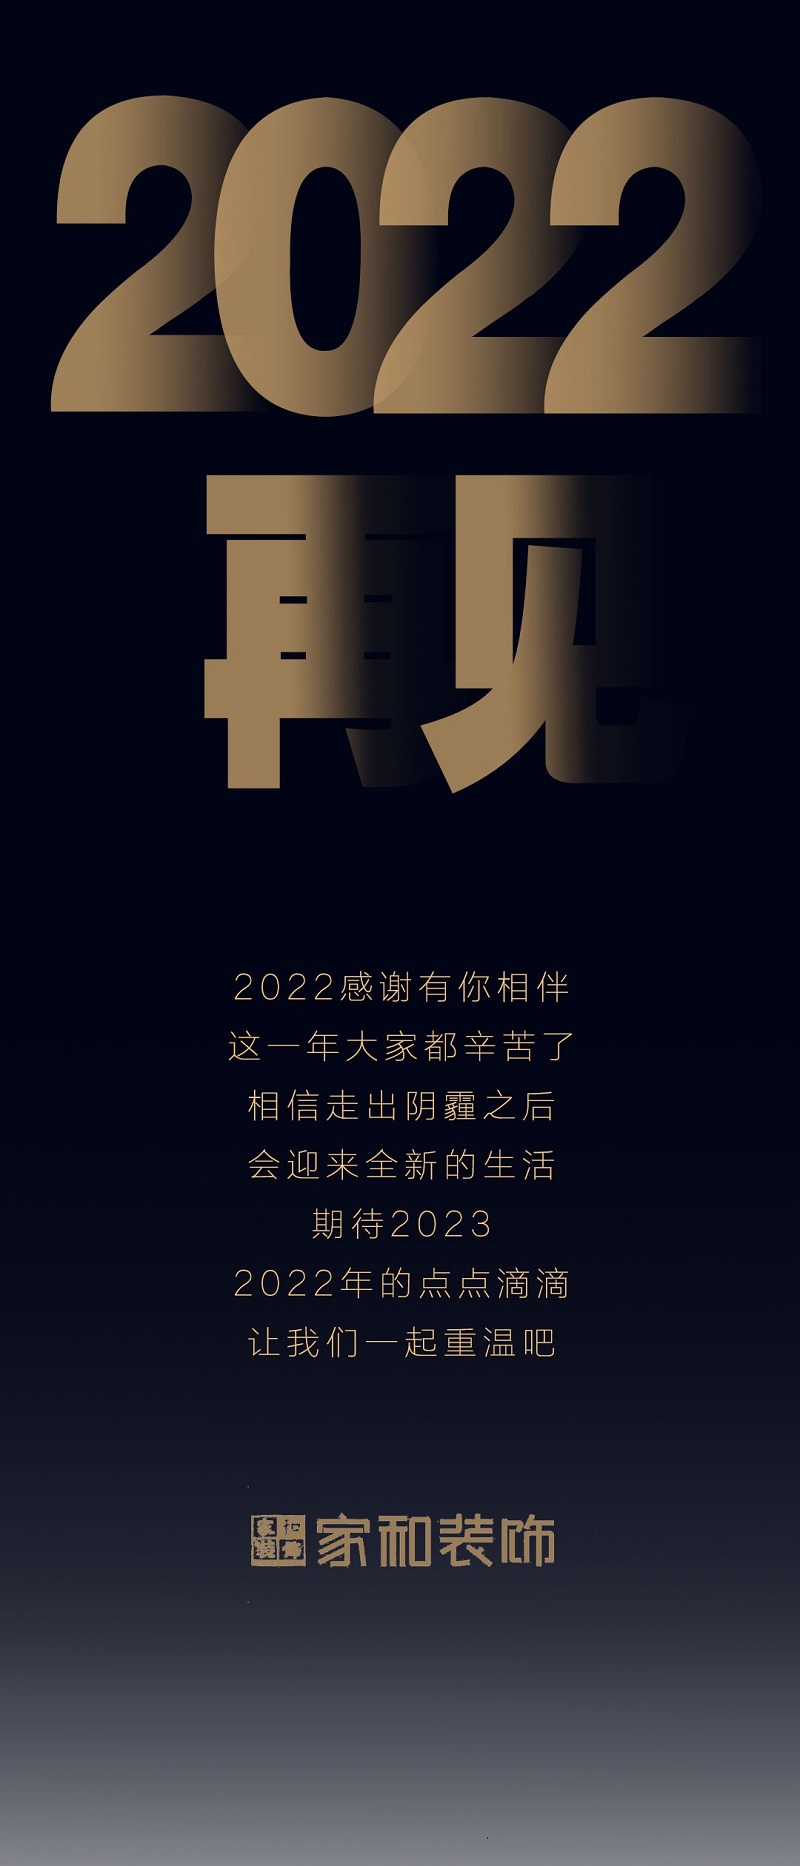 202203 - 副本.jpg